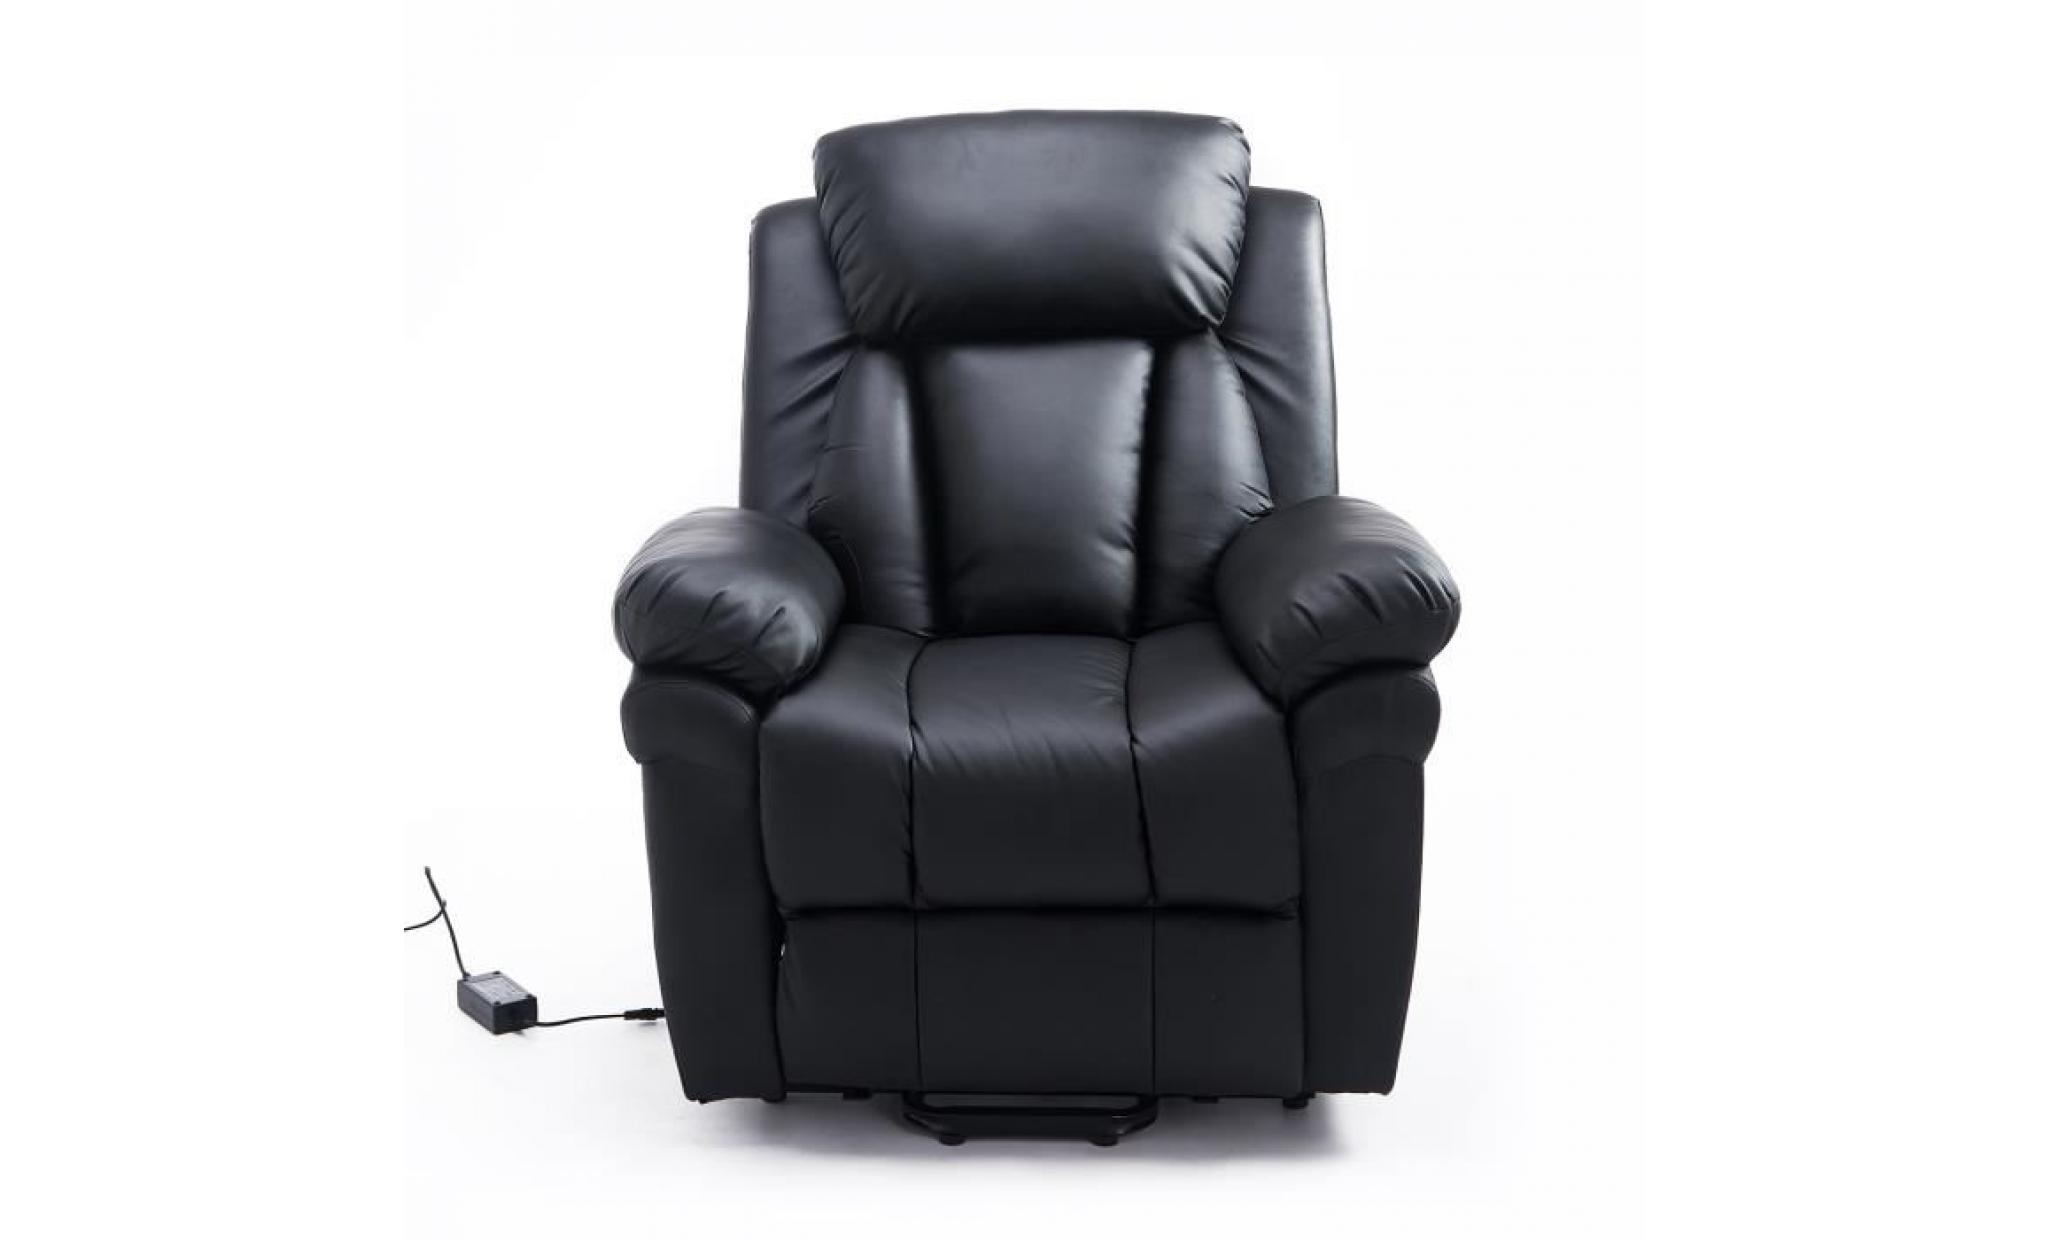 fauteuil de relaxation électrique fauteuil releveur inclinable avec repose pied ajustable simili cuir noir neuf 13bk pas cher